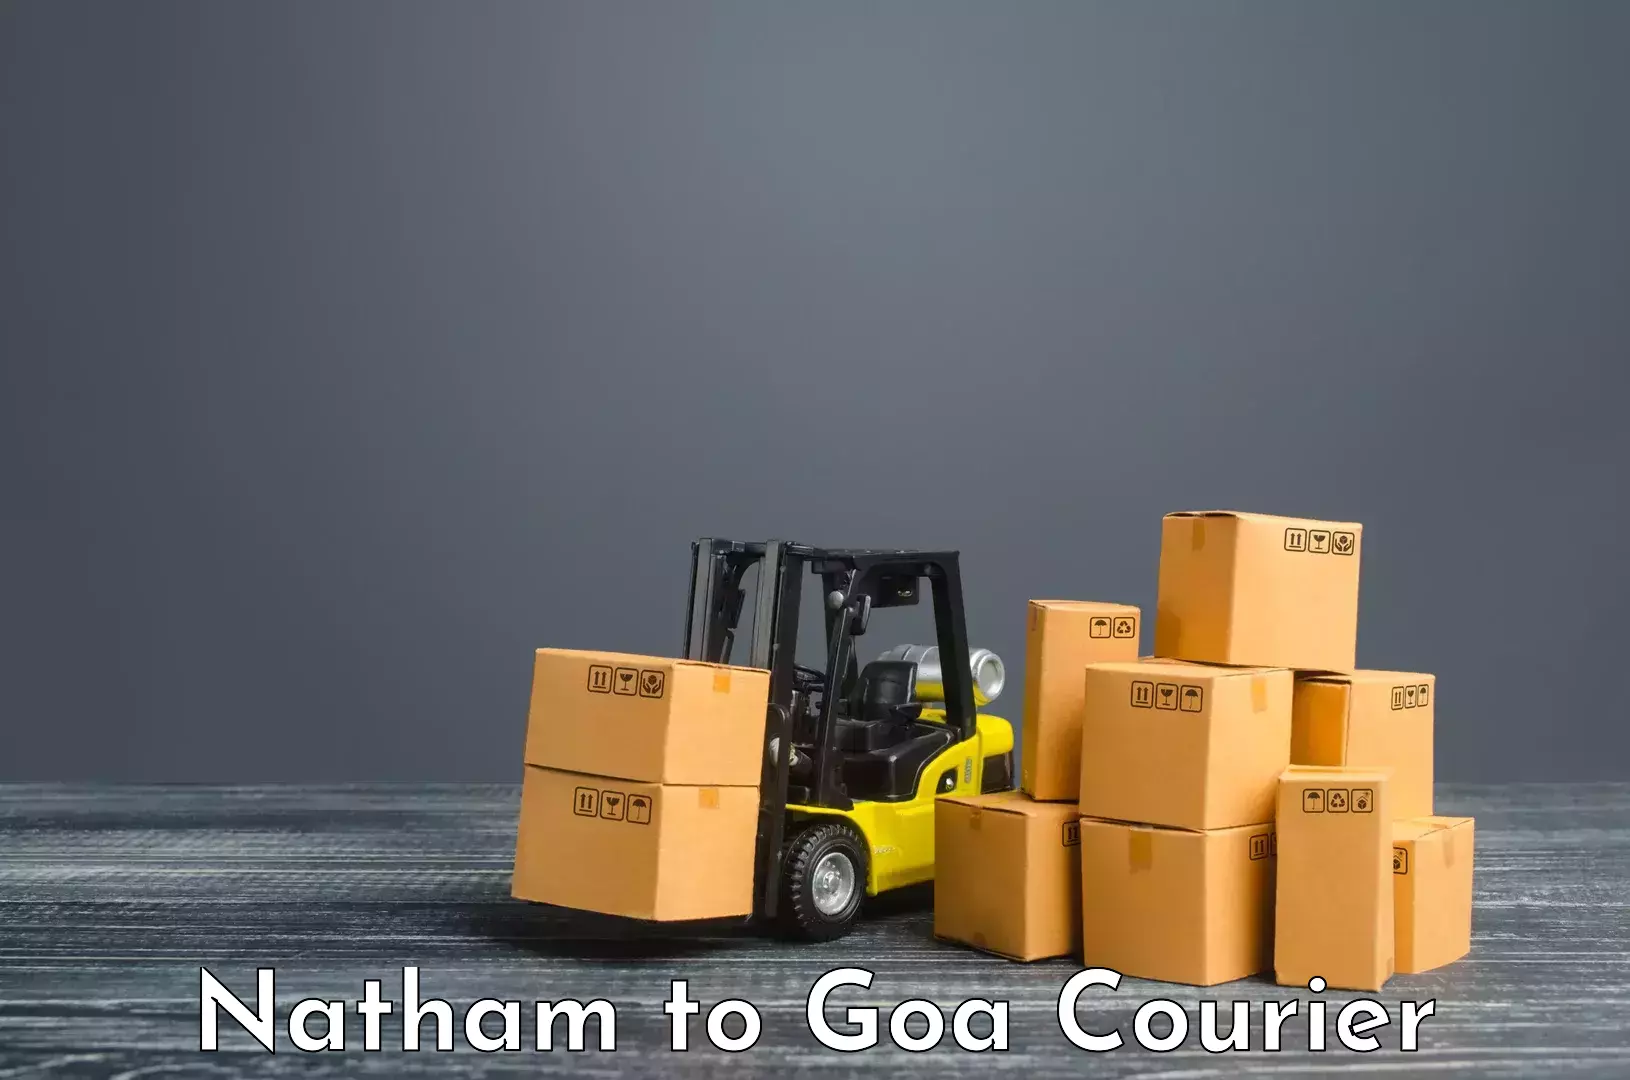 Courier service partnerships Natham to Goa University